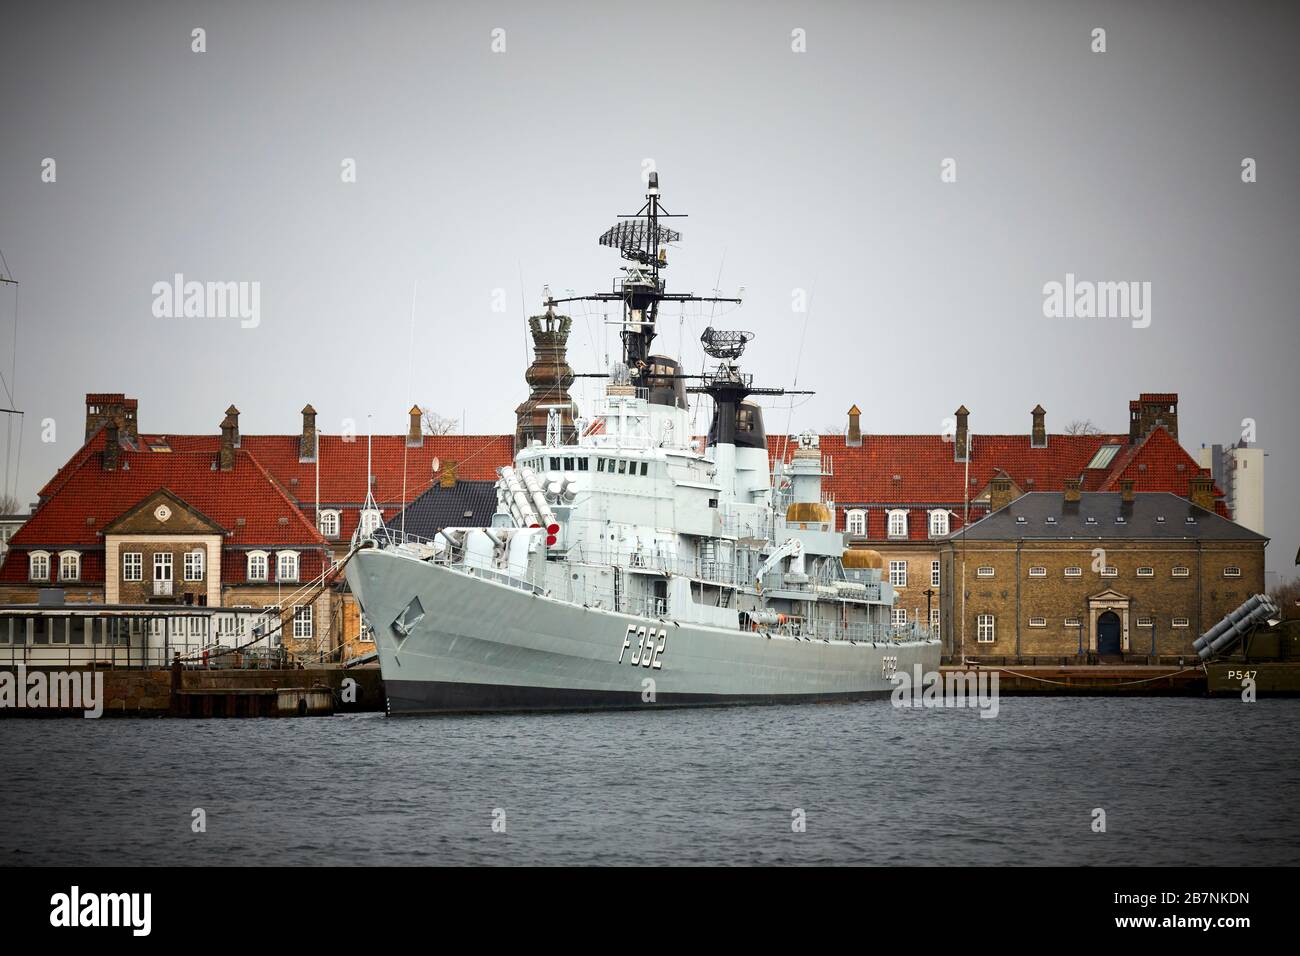 Copenhagen, capitale della Danimarca, la stazione navale Holmen HDMS Peder Skram (F352) la fregata della Royal Danish Navy è stata smantellata nel 1990 e ora è una nave amusea. Foto Stock